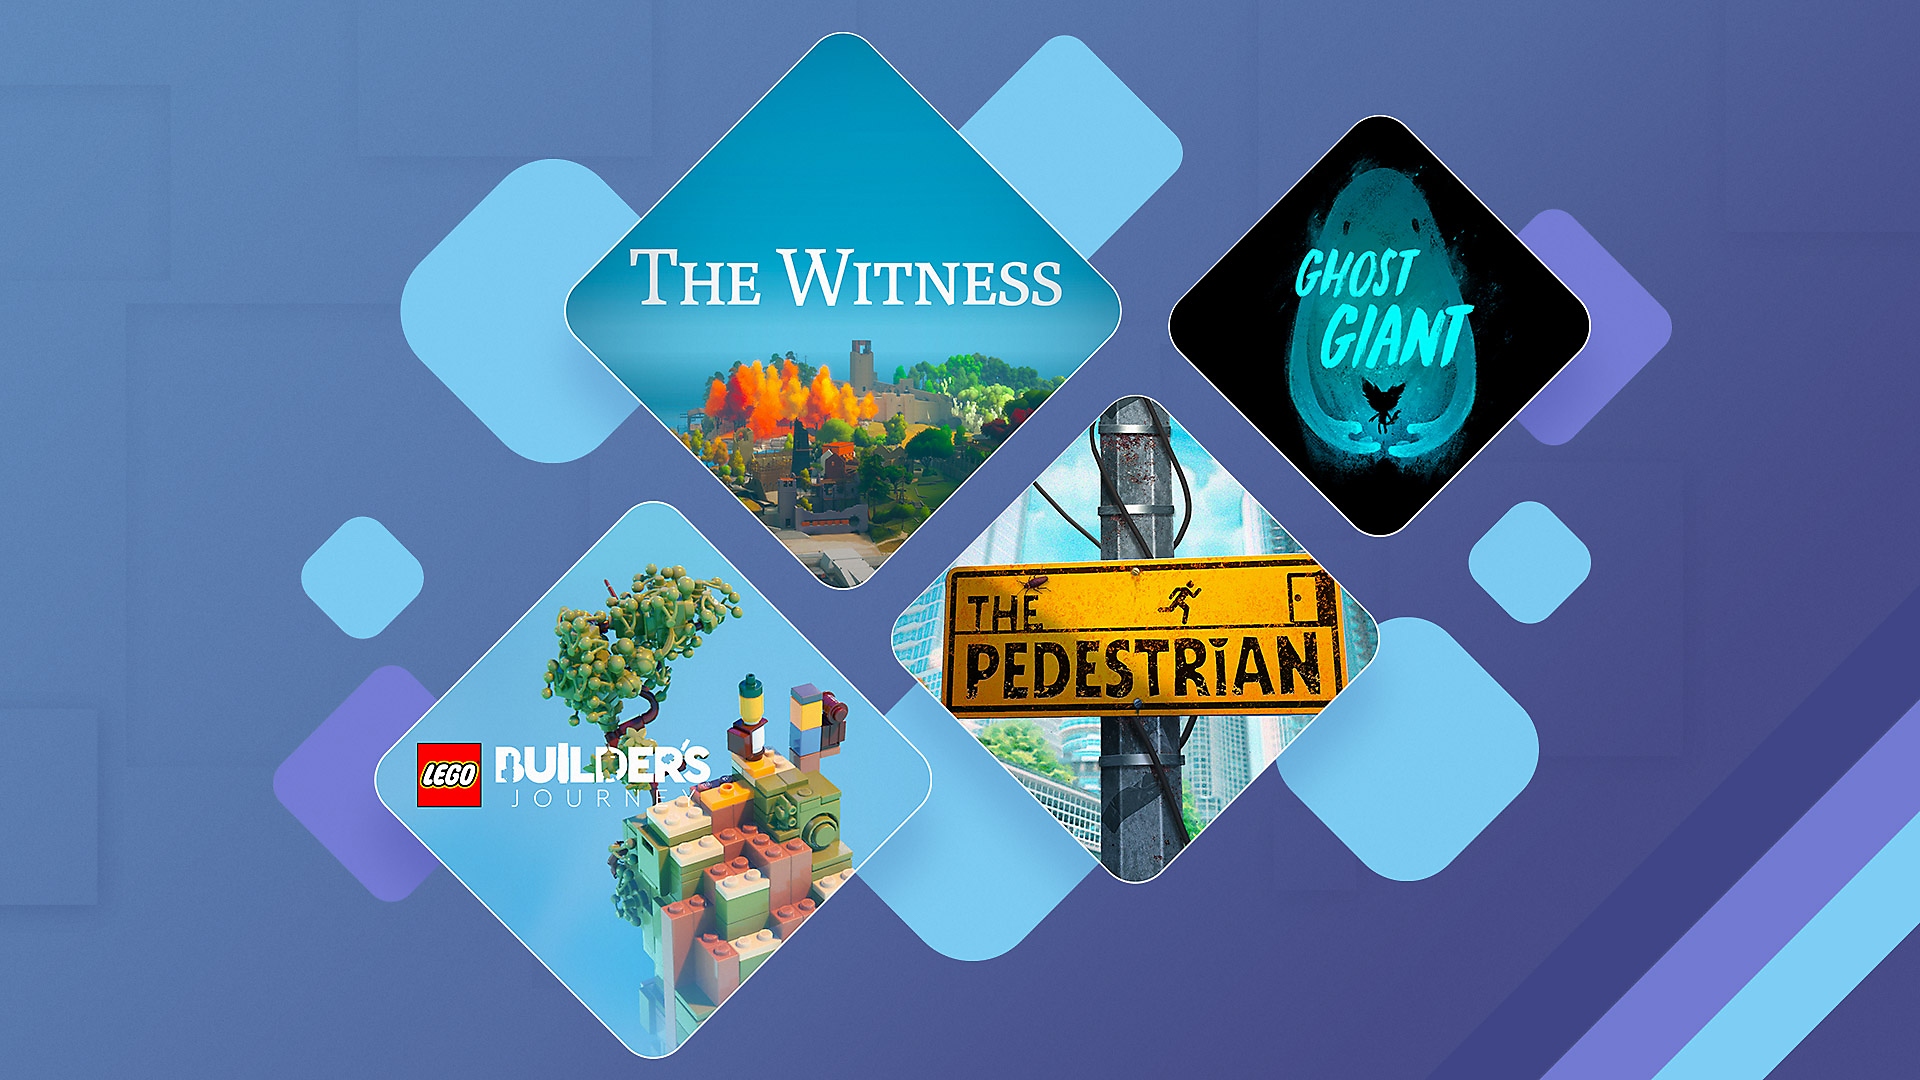 Τα καλύτερα παιχνίδια γρίφων σε PS4 και PS5 εικαστικό προώθησης με τα The Witness, Ghost Giant, Lego Builder's Journey και The Pedestrian.